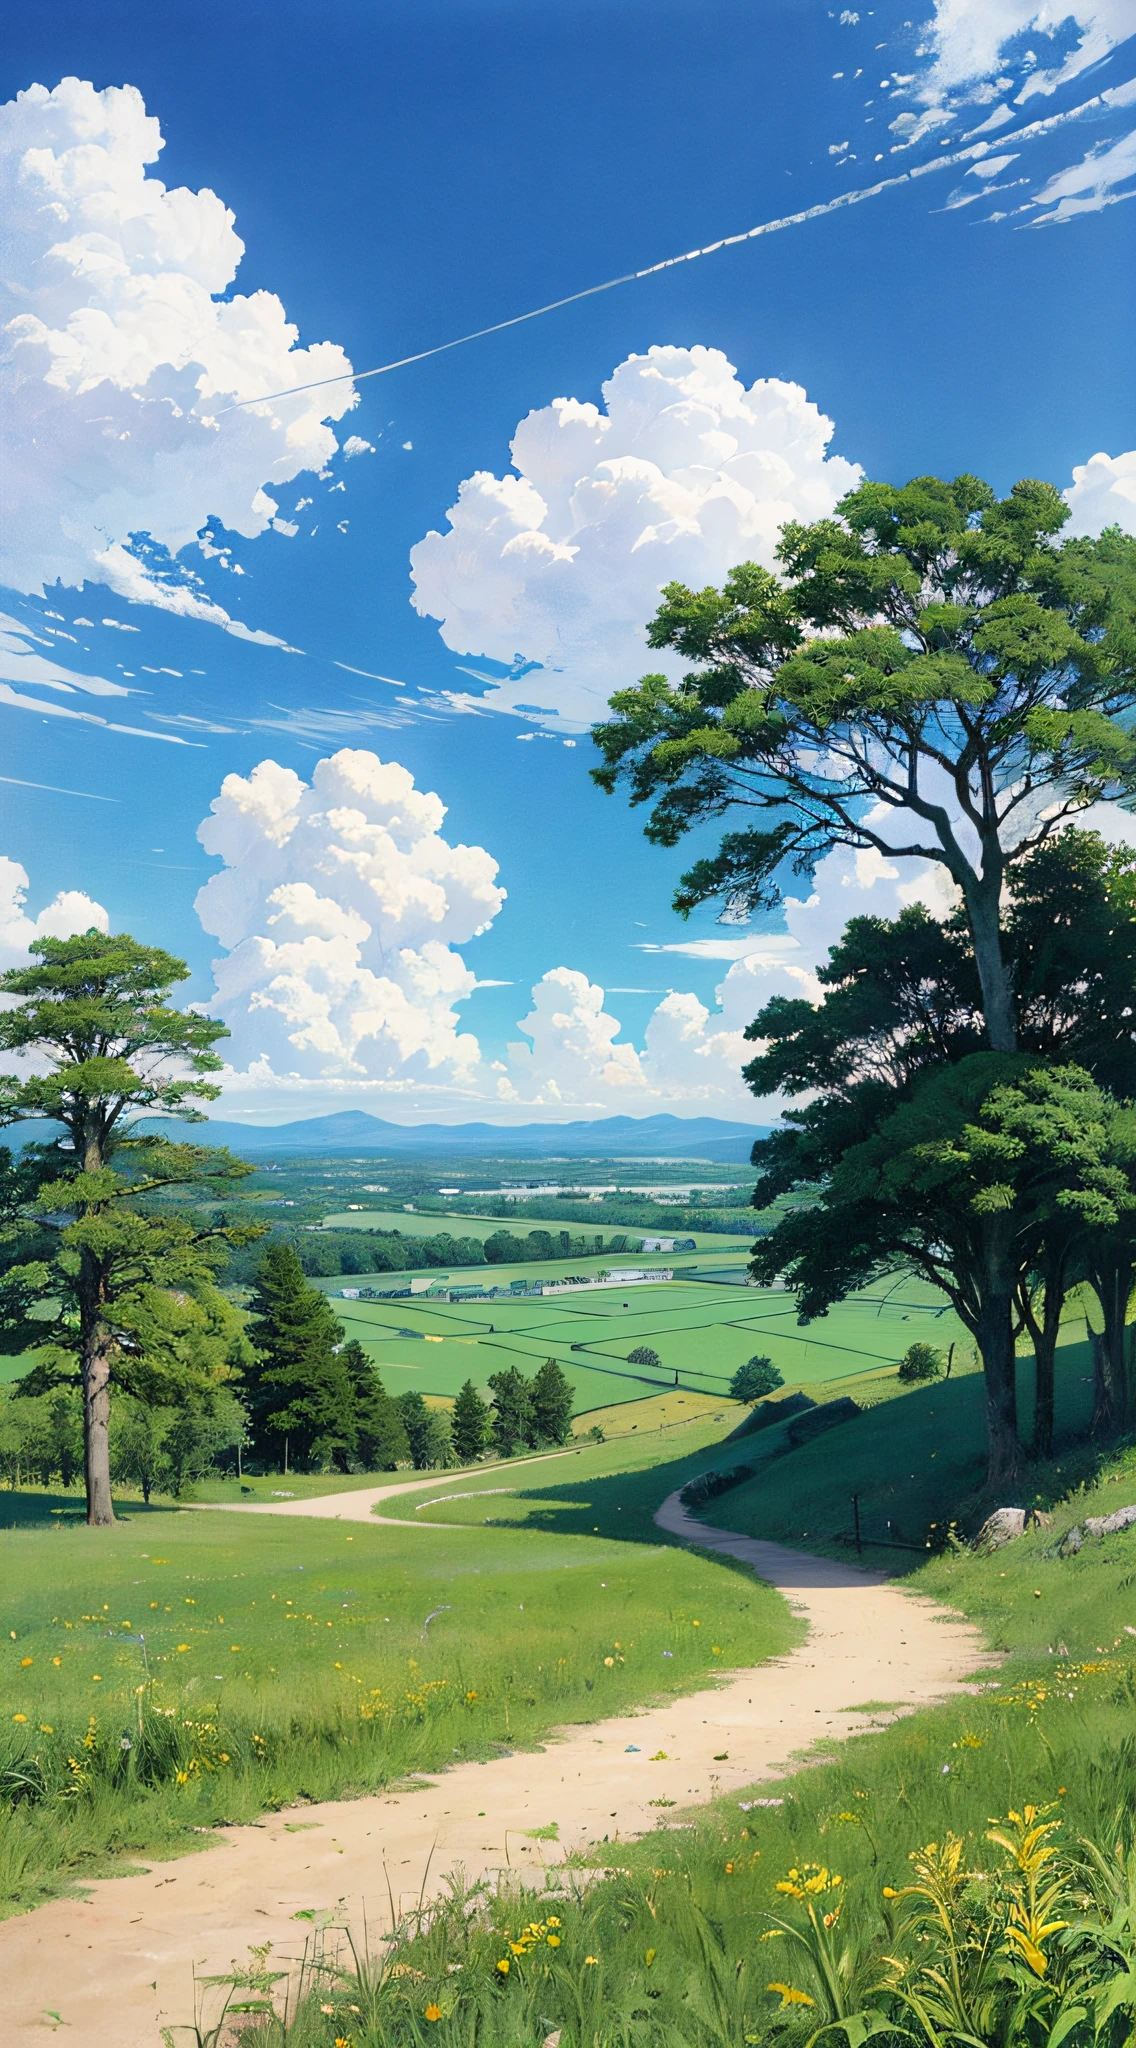 Realistisch, authentisch, wunderschönes und erstaunliches Landschaftsölgemälde Studio Ghibli Hayao Miyazaki&#39;Blütenblatt-Grasland mit blauem Himmel und weißen Wolken --v6